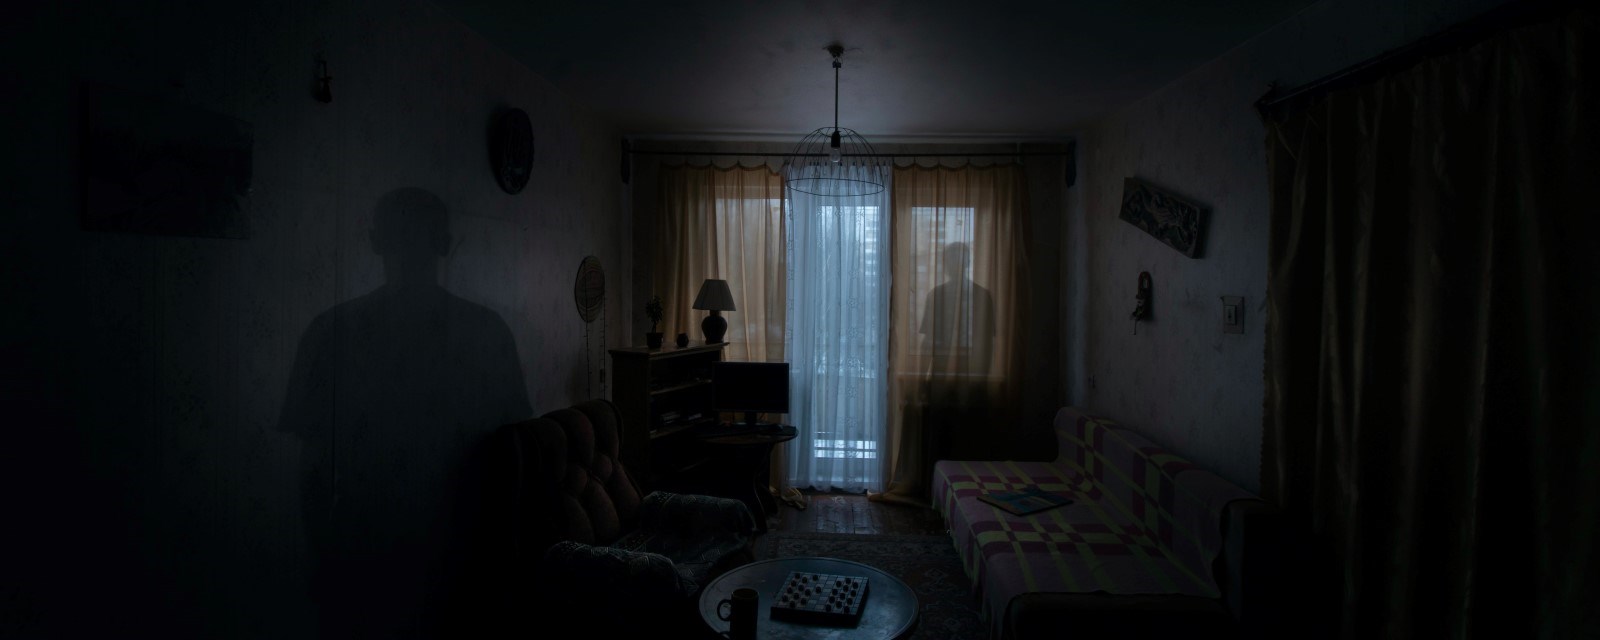 En mørk stue der man ser skyggen av en person i vinduet)